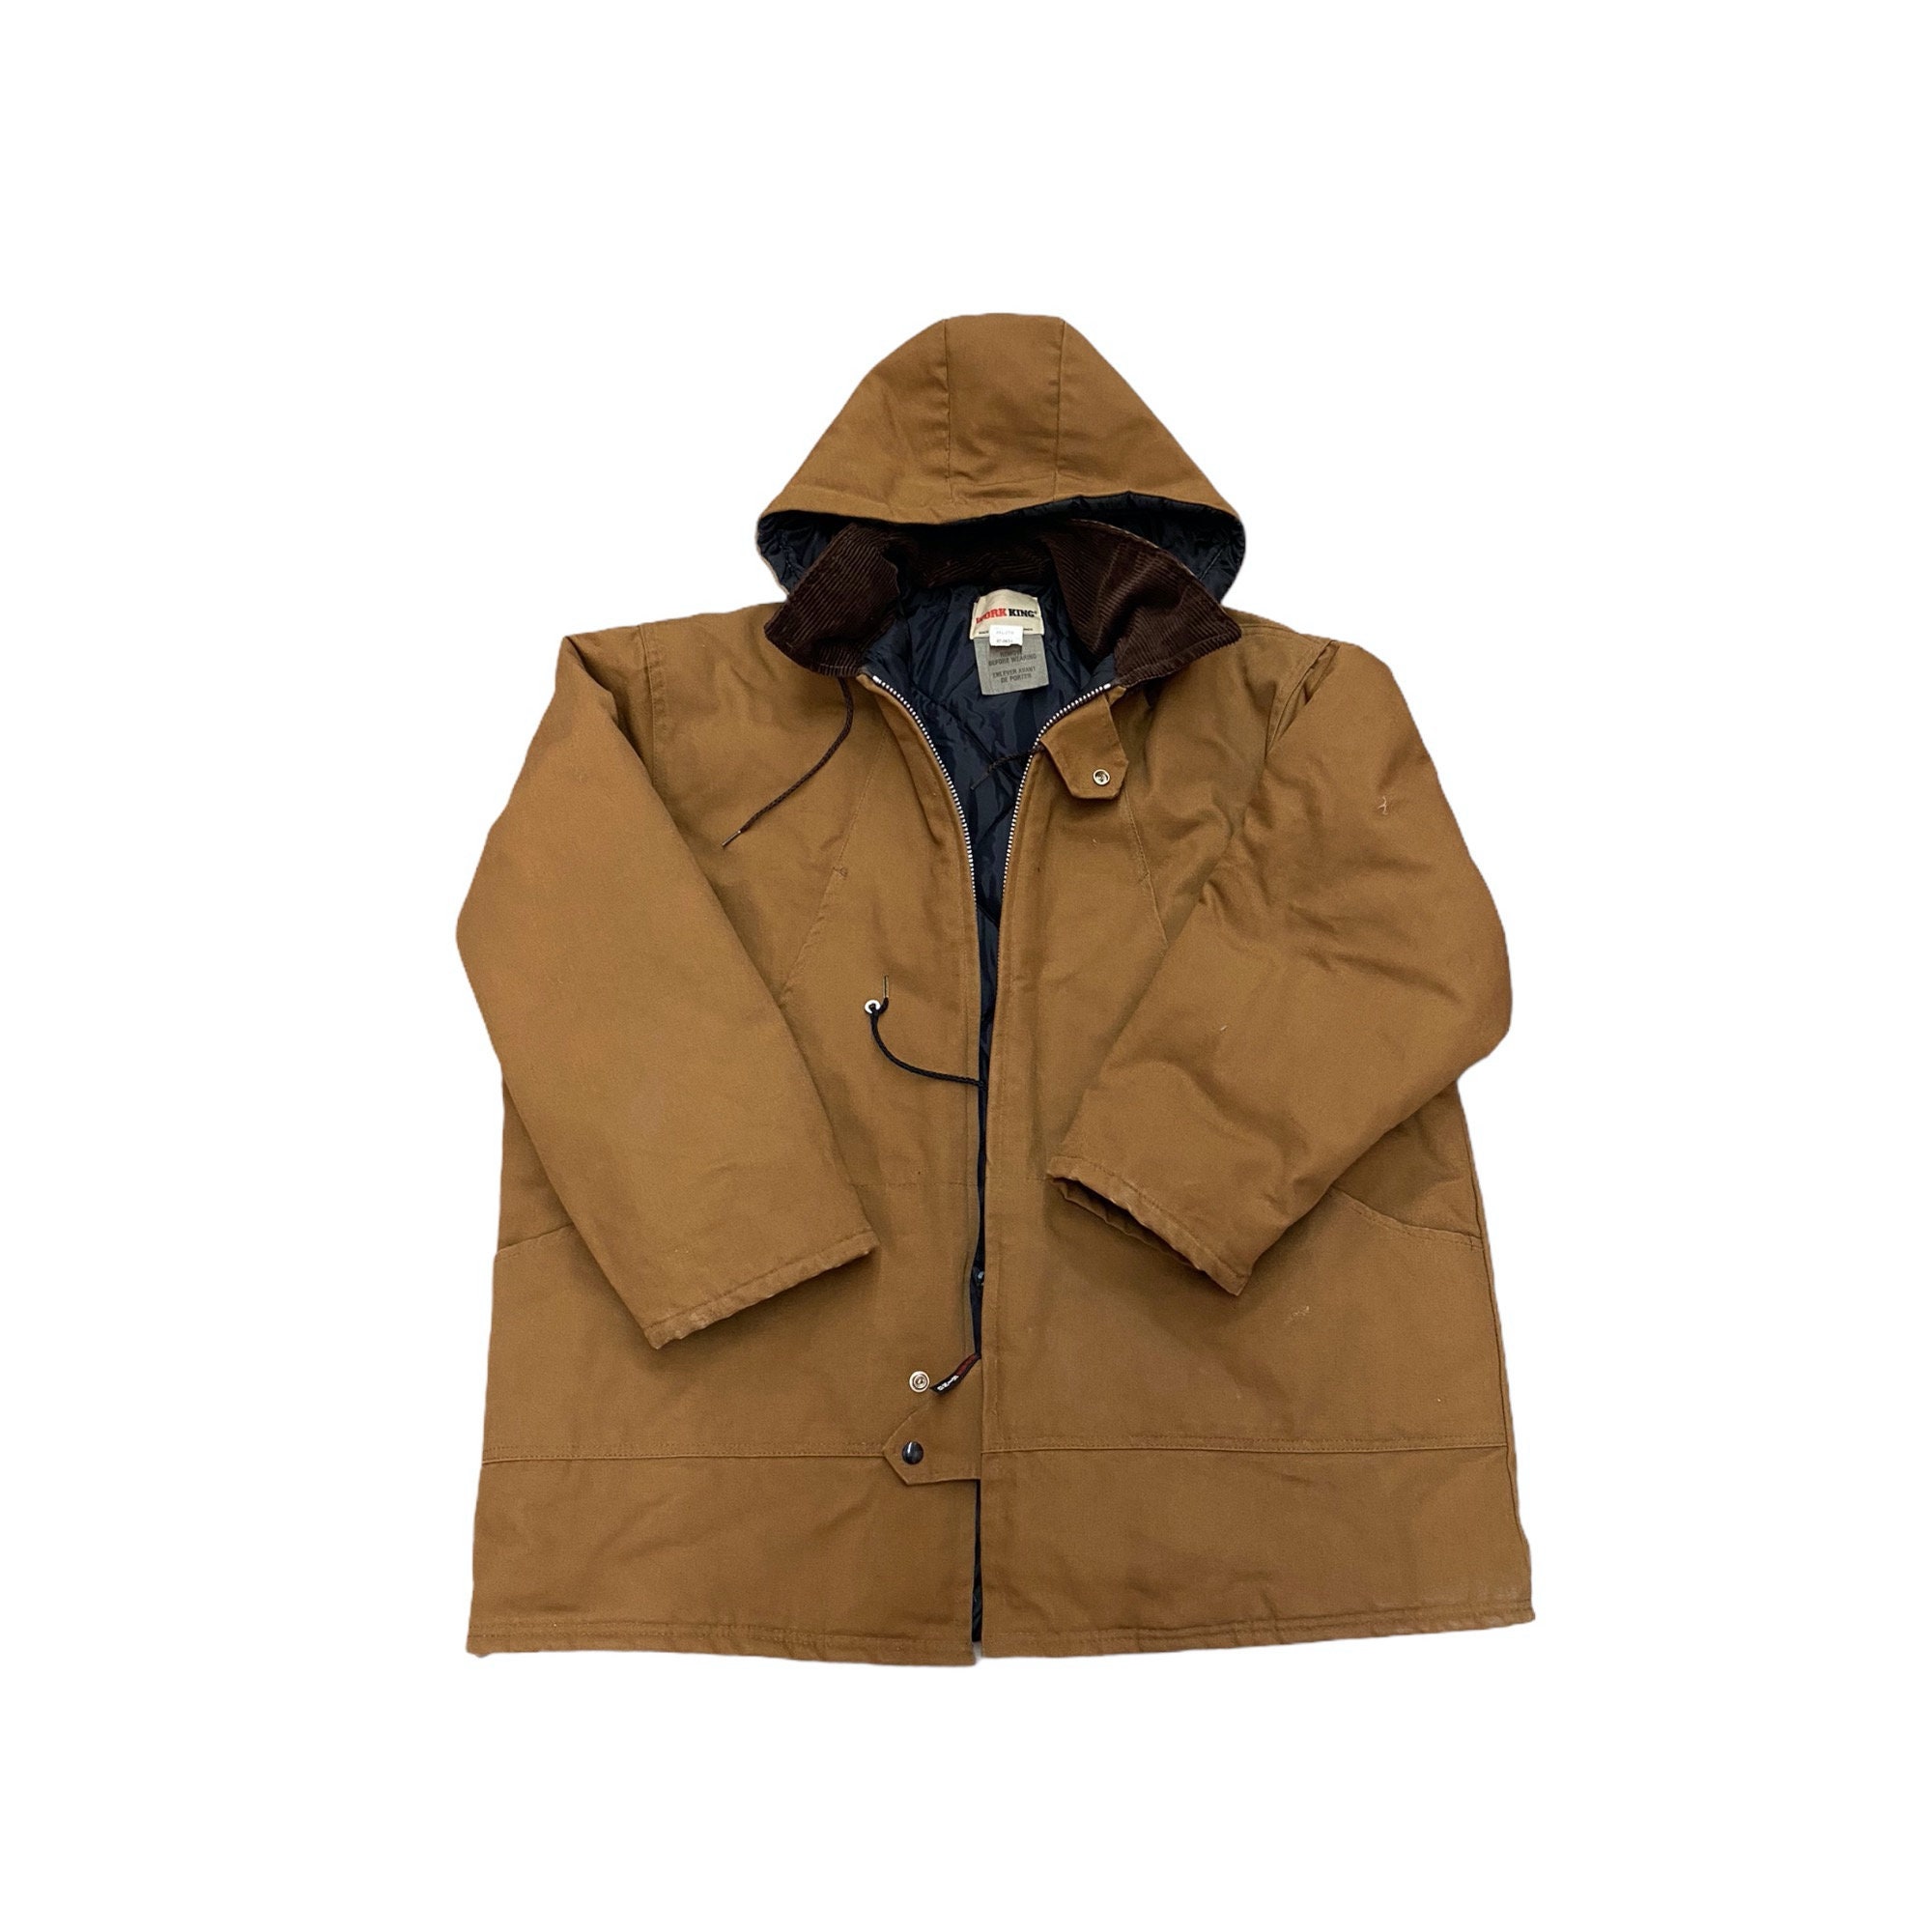 Vintage Work King Jacket Blanket Lined Full Zip Workwear | Etsy